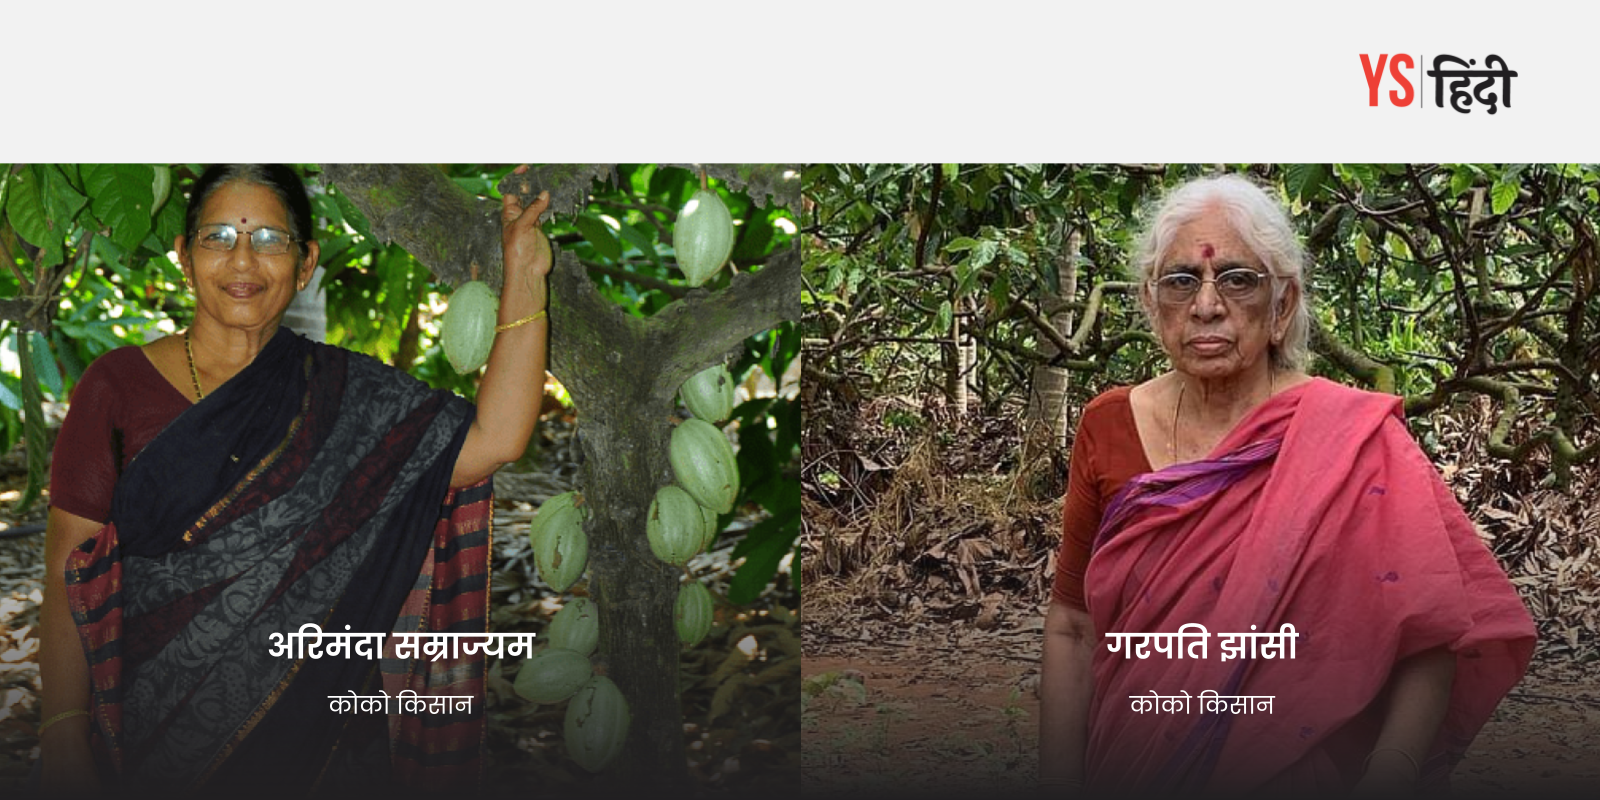 कोको की खेती से ये महिलाएं कमा रही है बड़ा मुनाफा, जानिए कैसे?